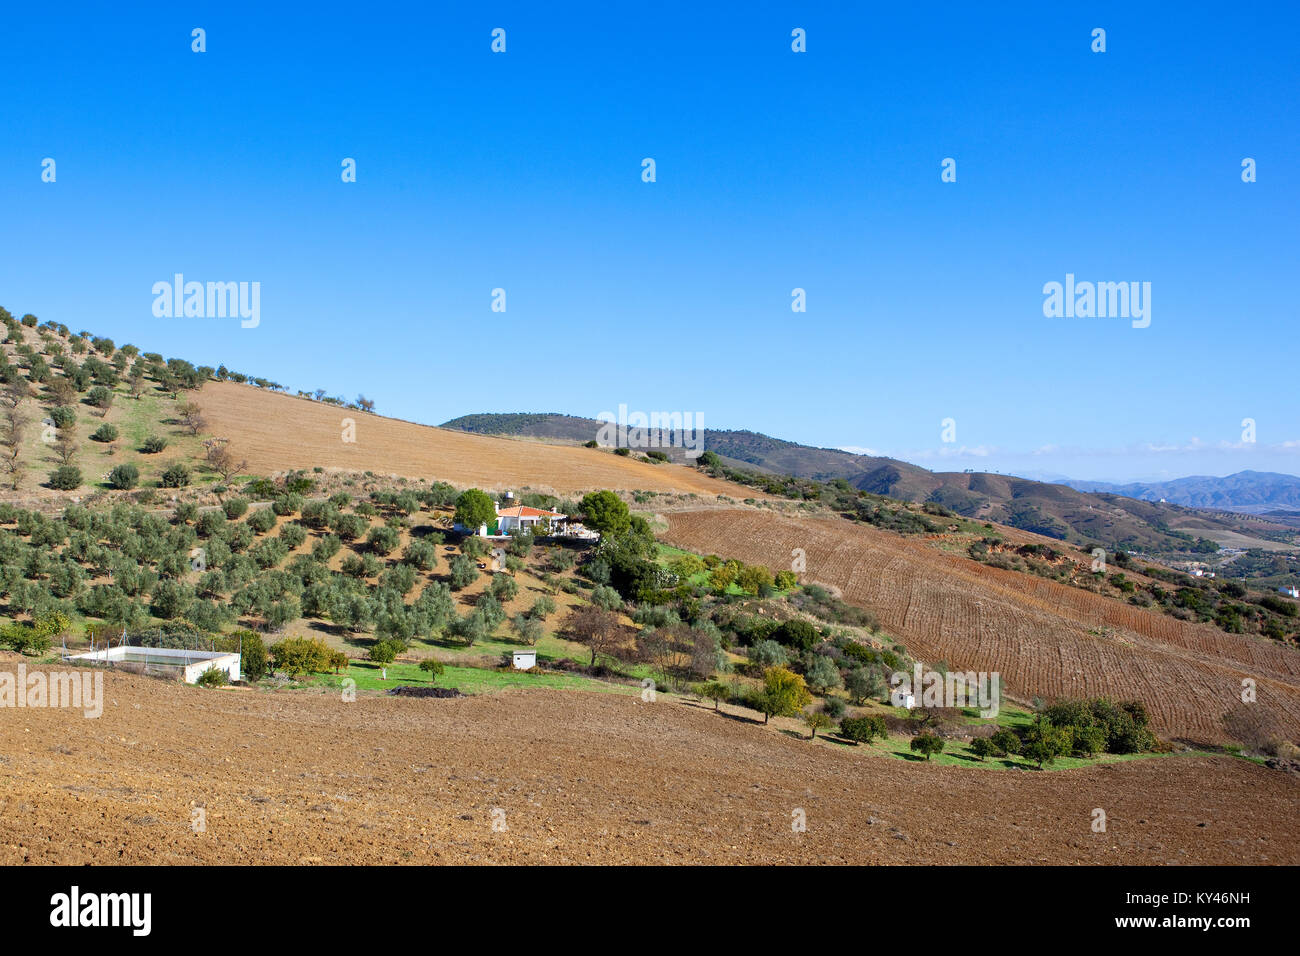 Una villa bianca in tra oliveti e campi arati con delle montagne boscose sotto un cielo blu chiaro in Andalusia Spagna Foto Stock